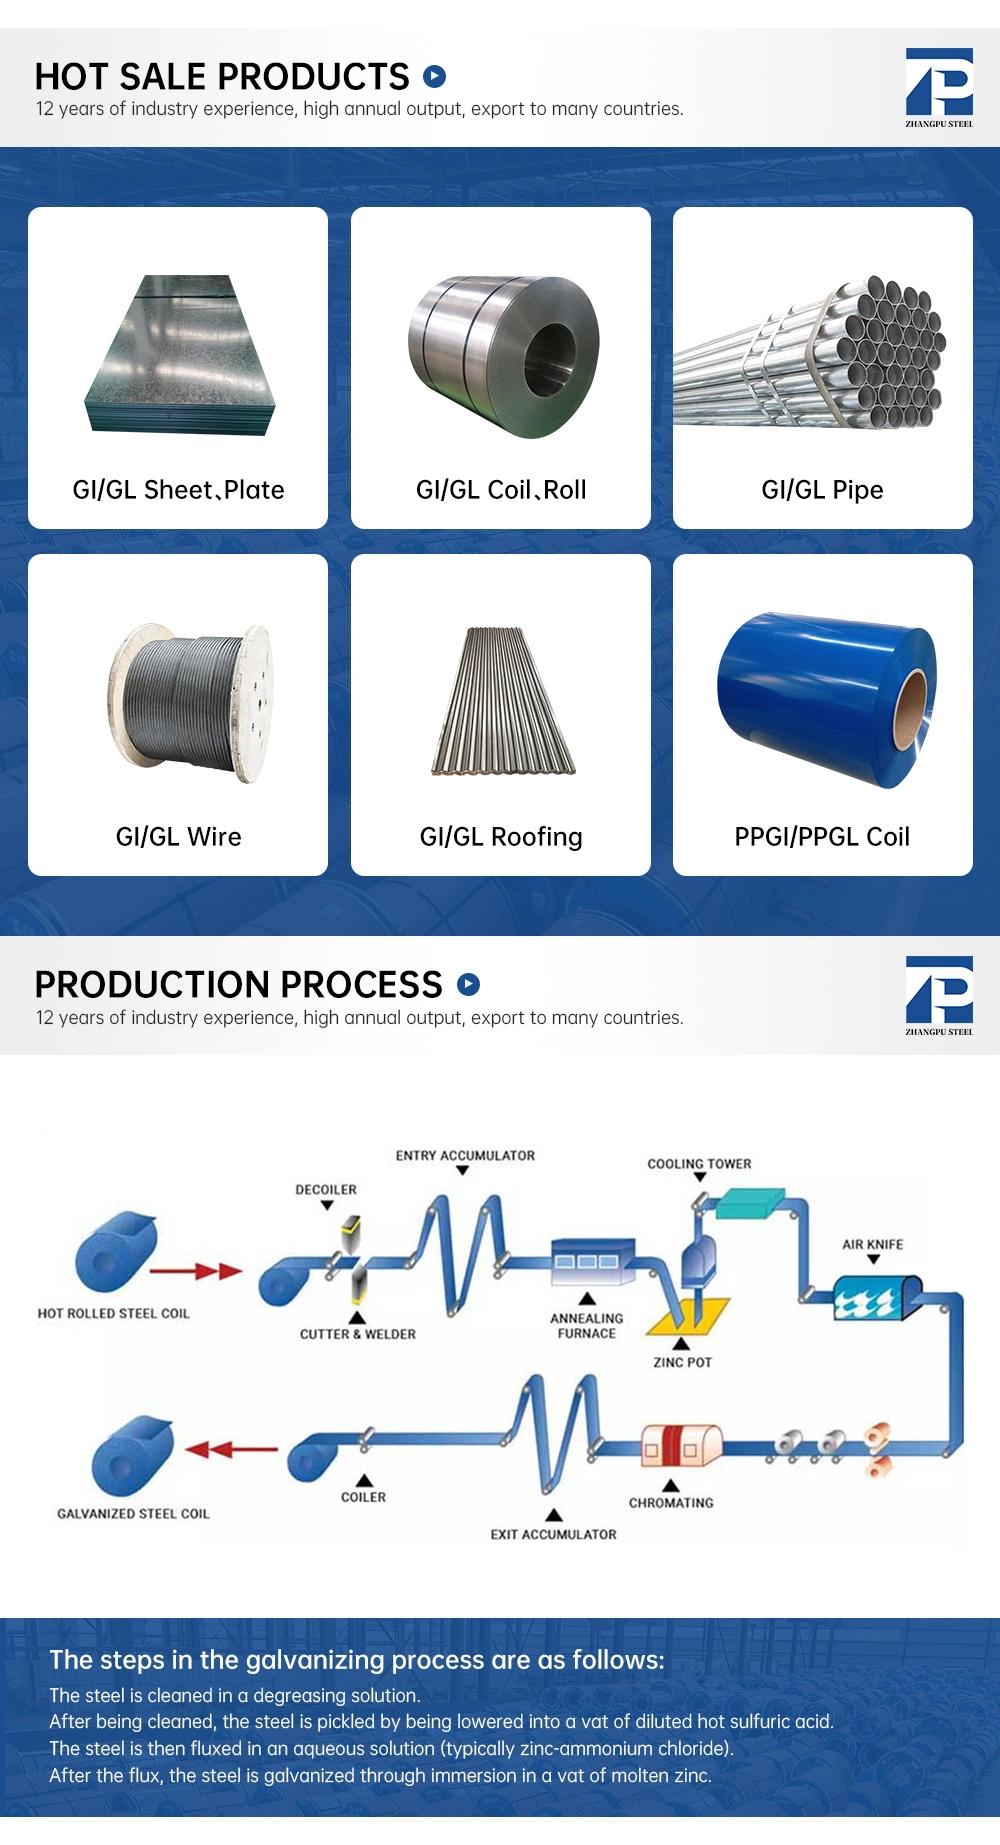 PPGI PPGL Prepainted Galvanized Steel Coil Manufacture Specification PPGI/PPGL Steel Coil